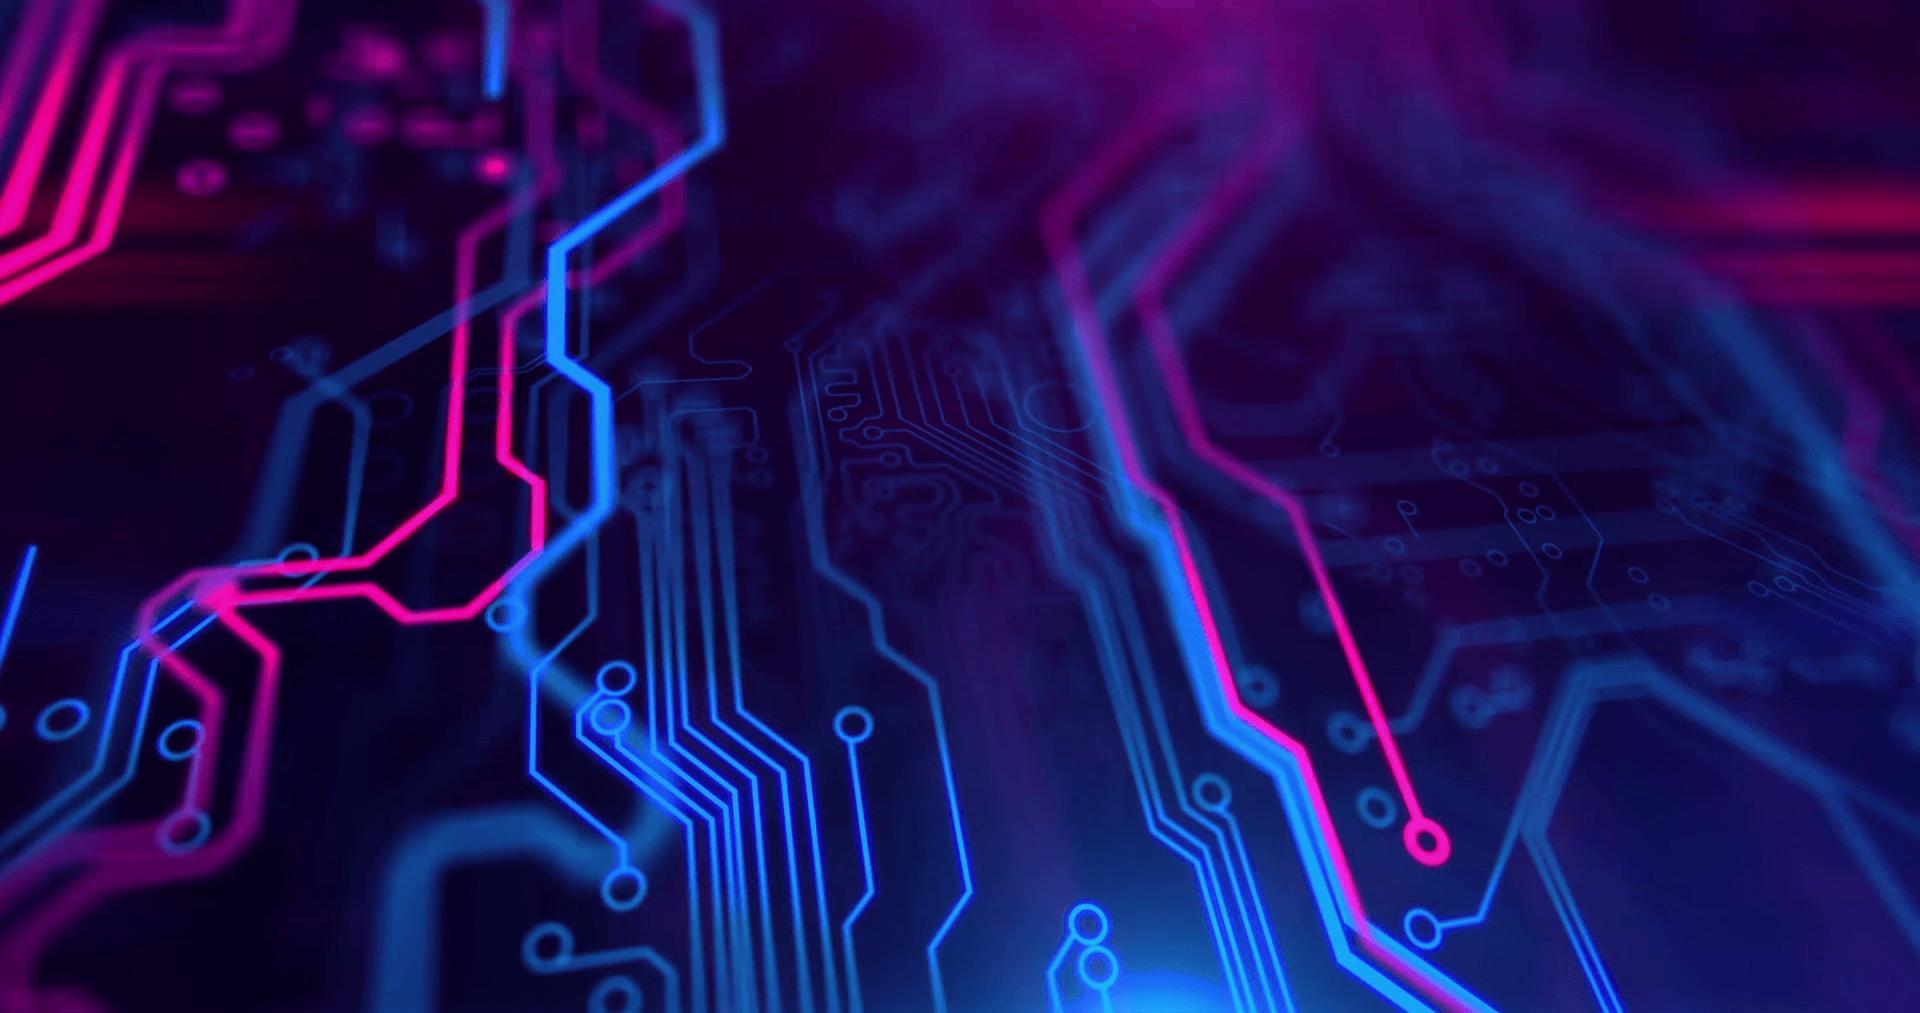 Printed circuit board video. Motherboard. Blue and purple digital